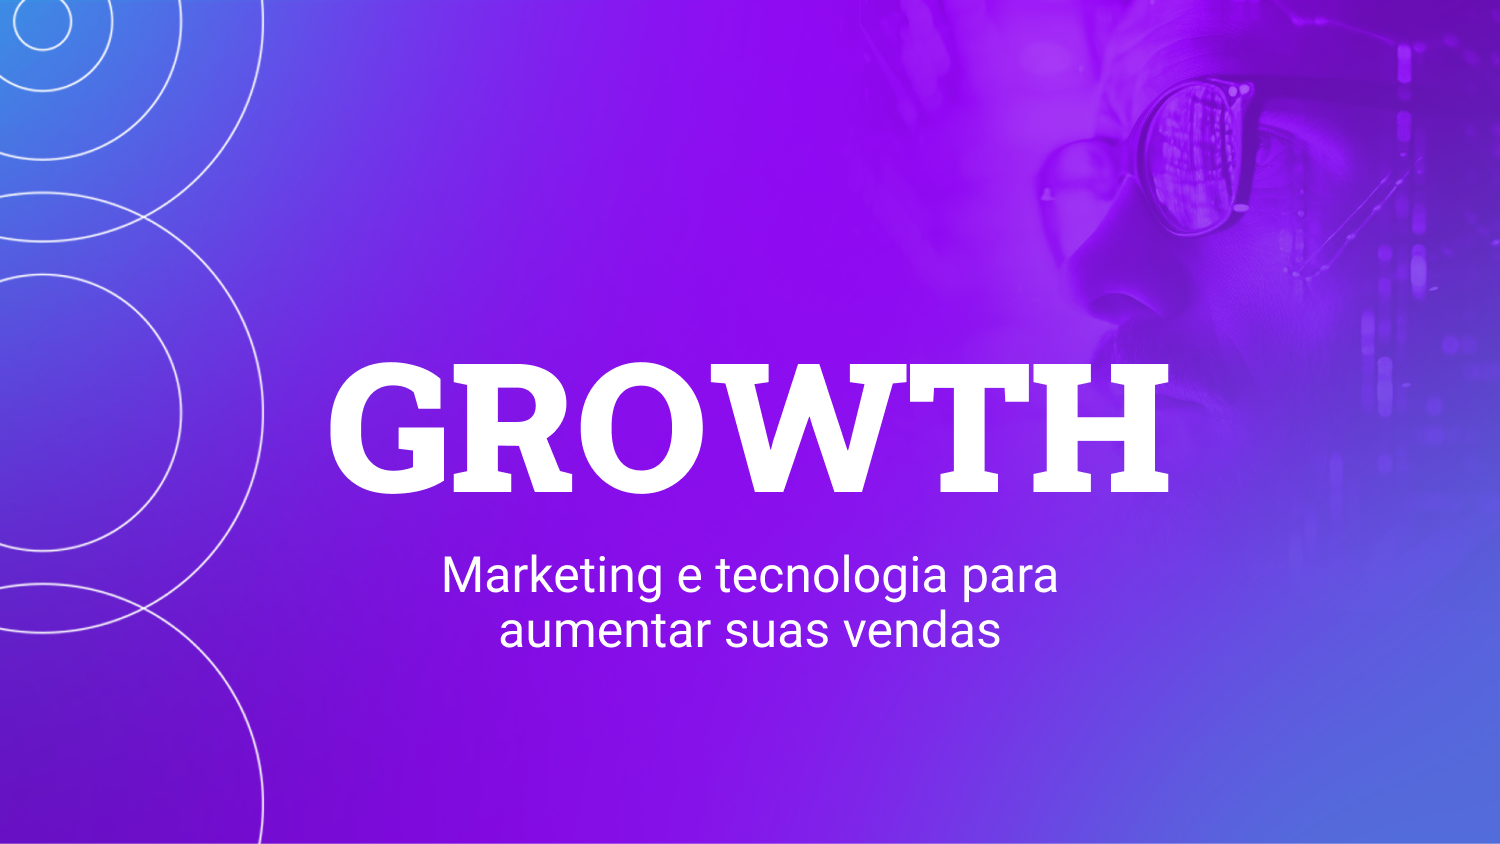 Texto ecrito "Growth marketing e tecnologia para aumentar suas vendas"